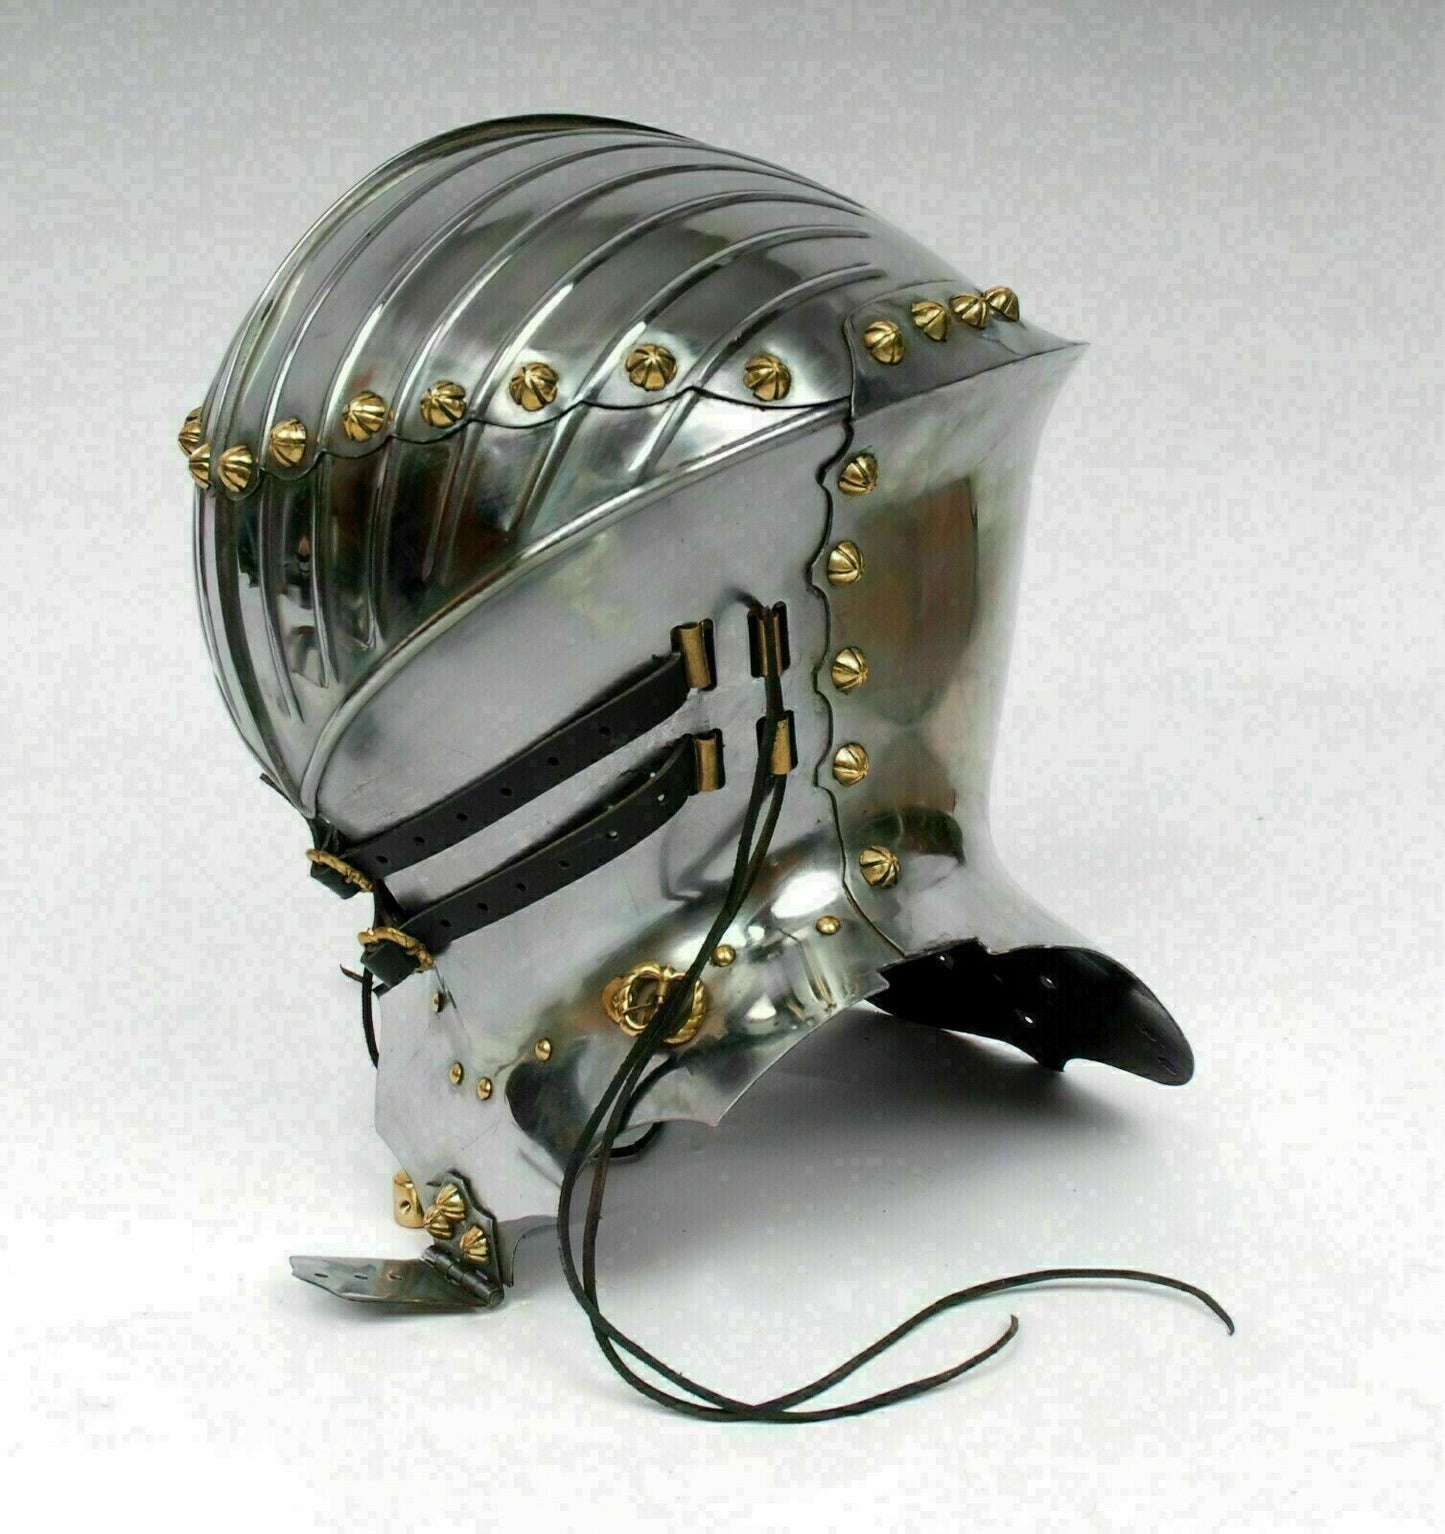 18 Gauge Stahl Mittelalterlicher Turnierritter Kampfrüstung Helm Halloween Kostüm